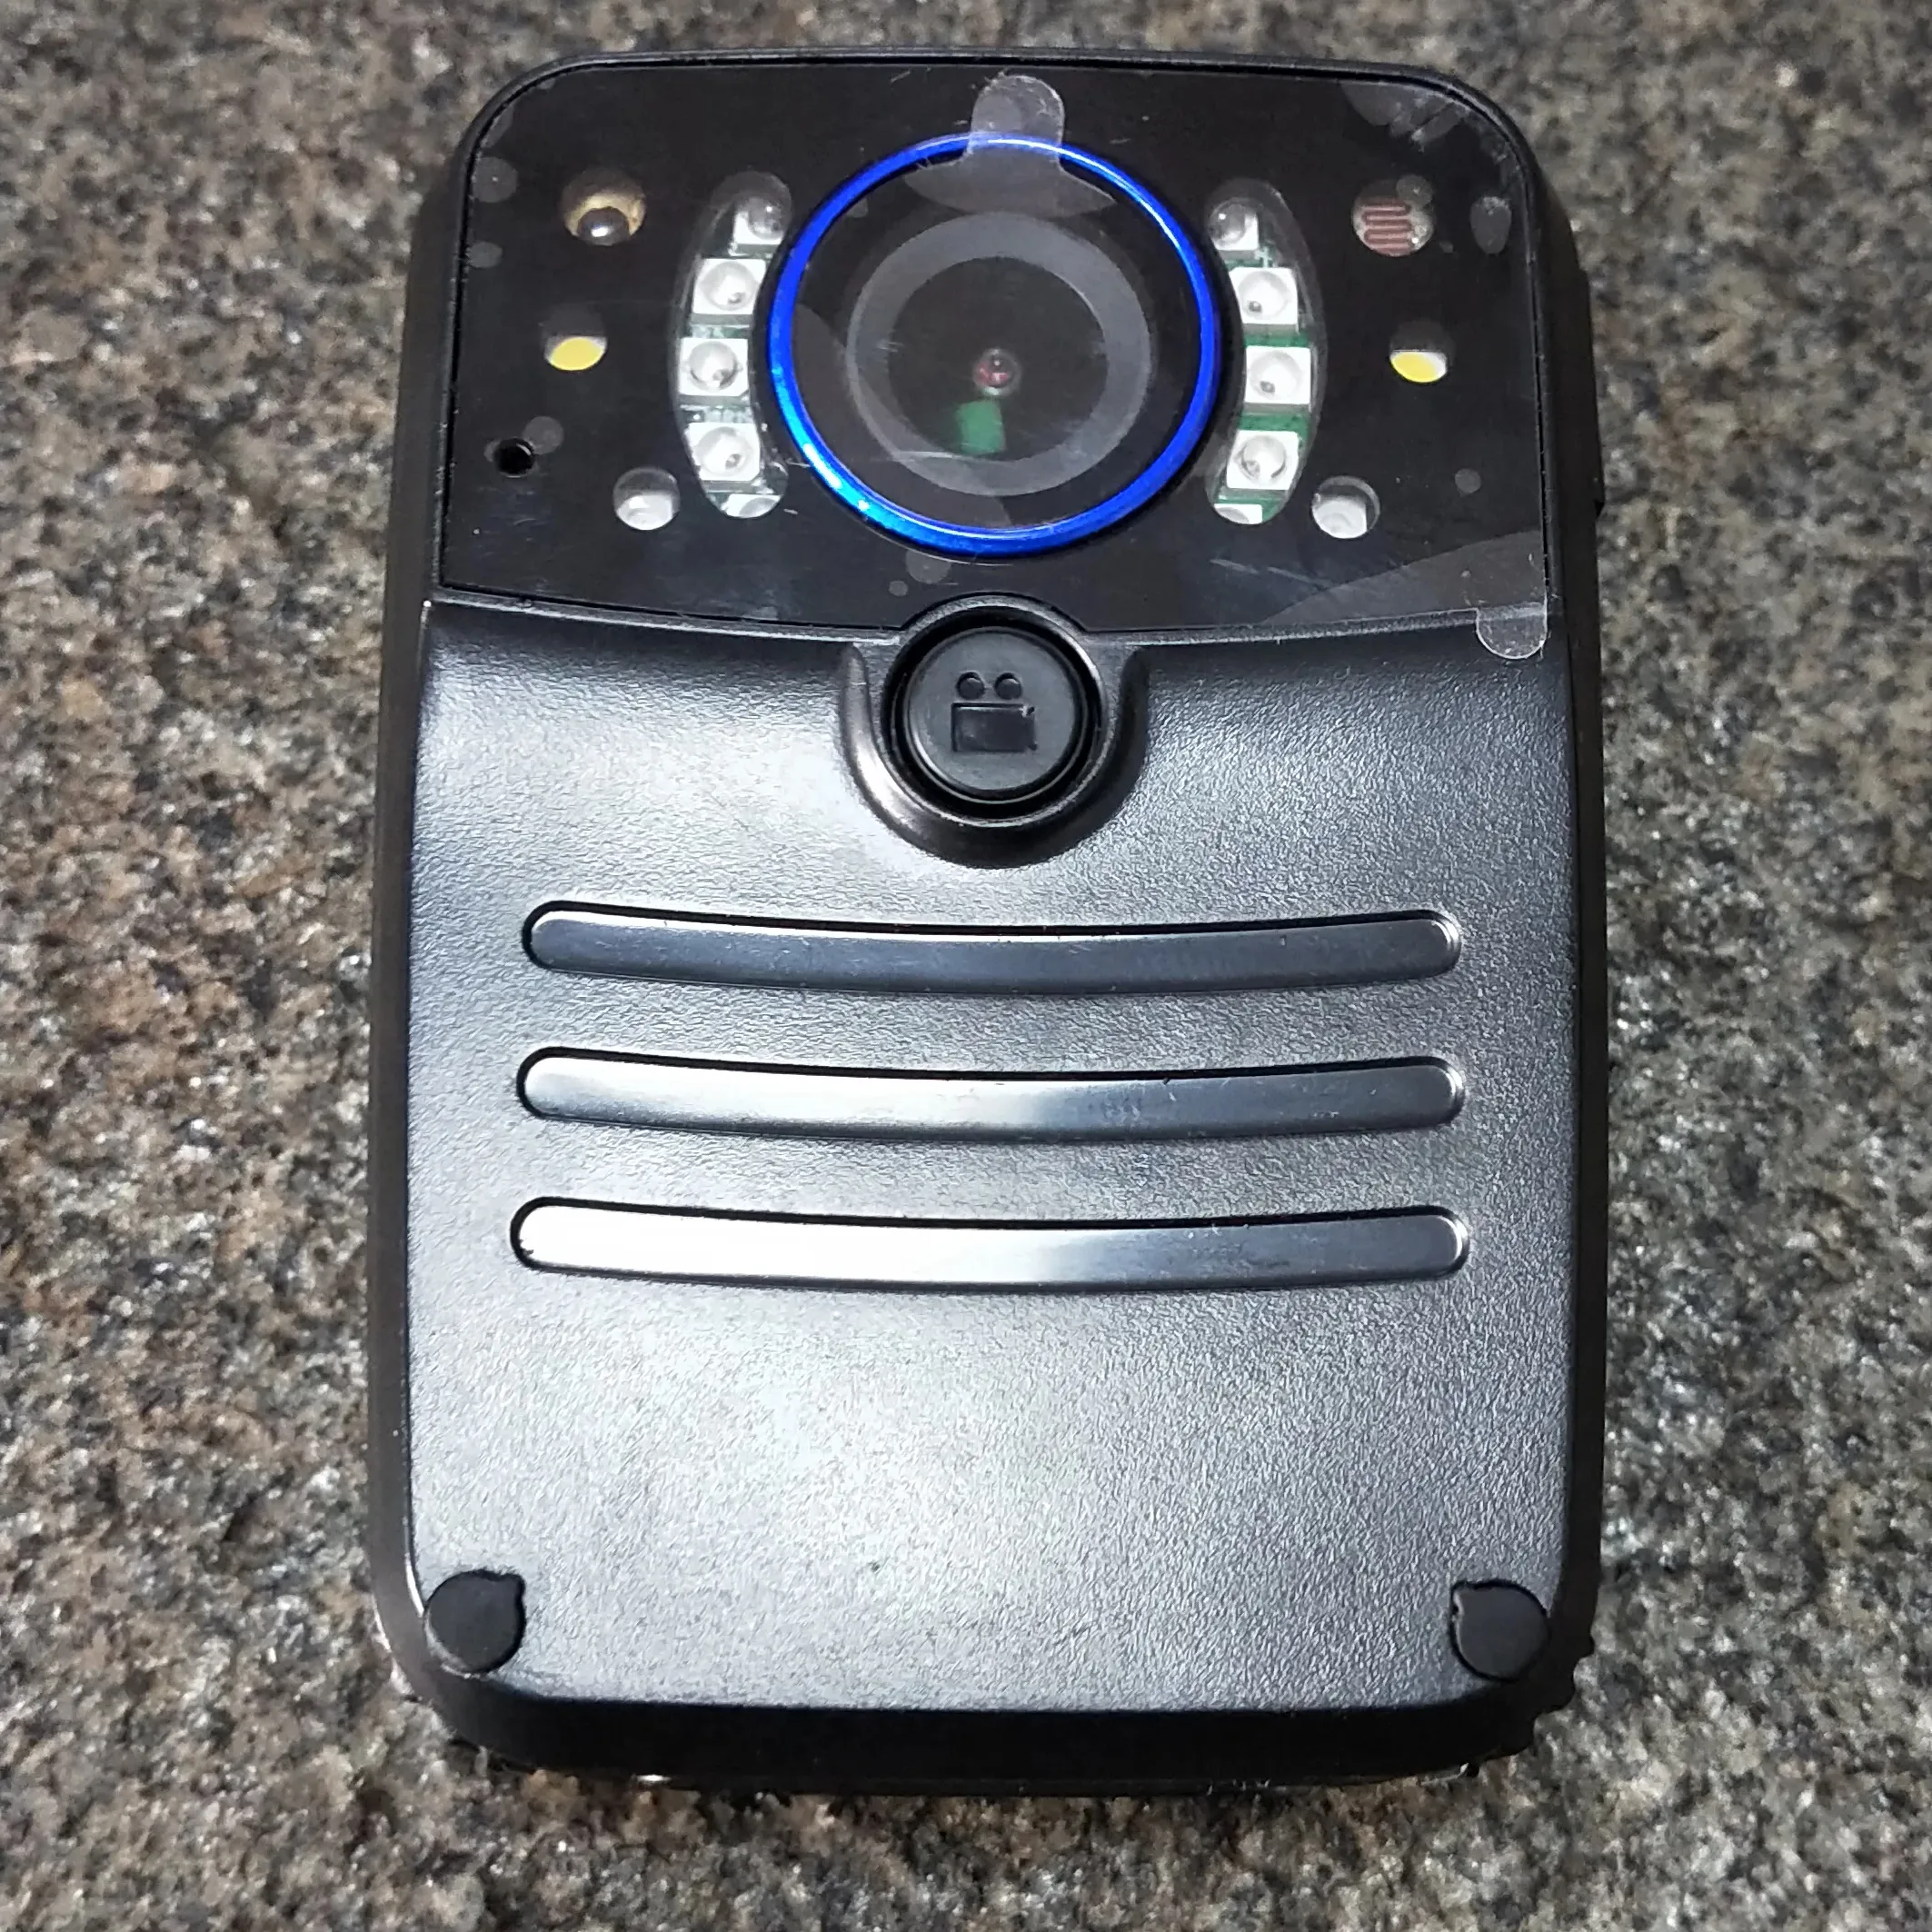 Dispositivo de gravação infravermelho portátil com câmera de visão noturna para aplicação da lei noturna